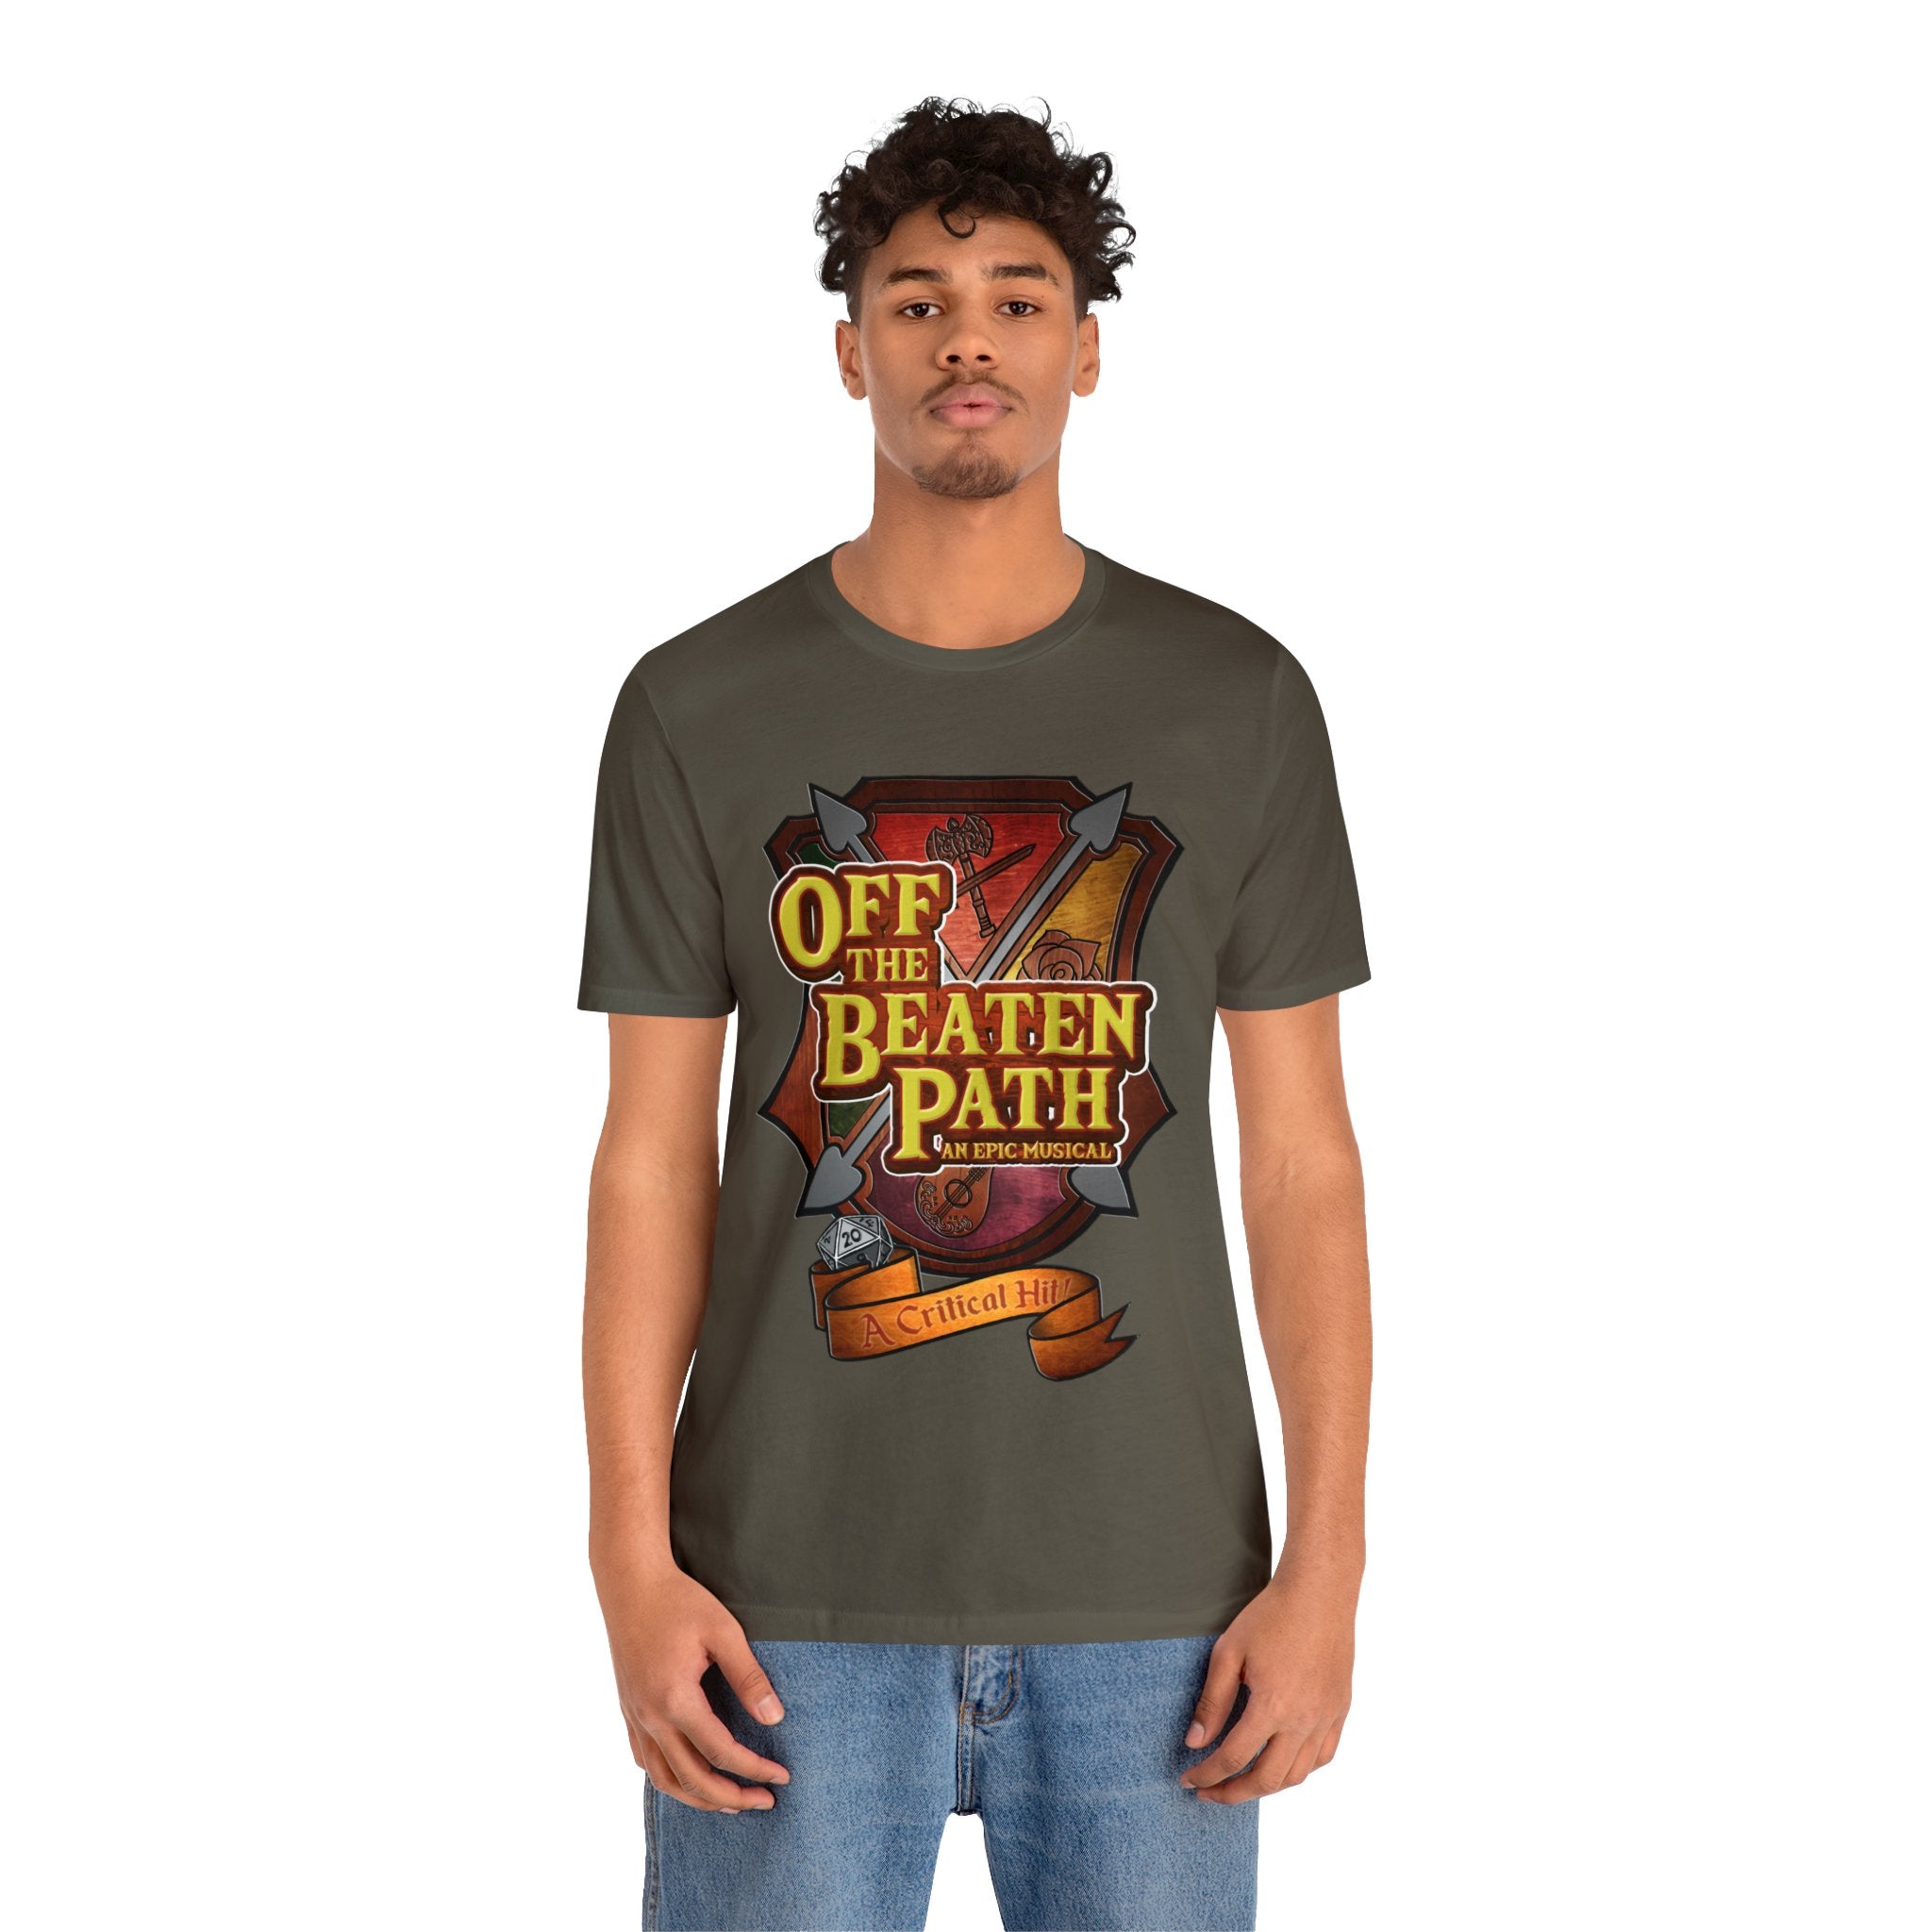 OBP Crest Jersey Crewneck T-shirt